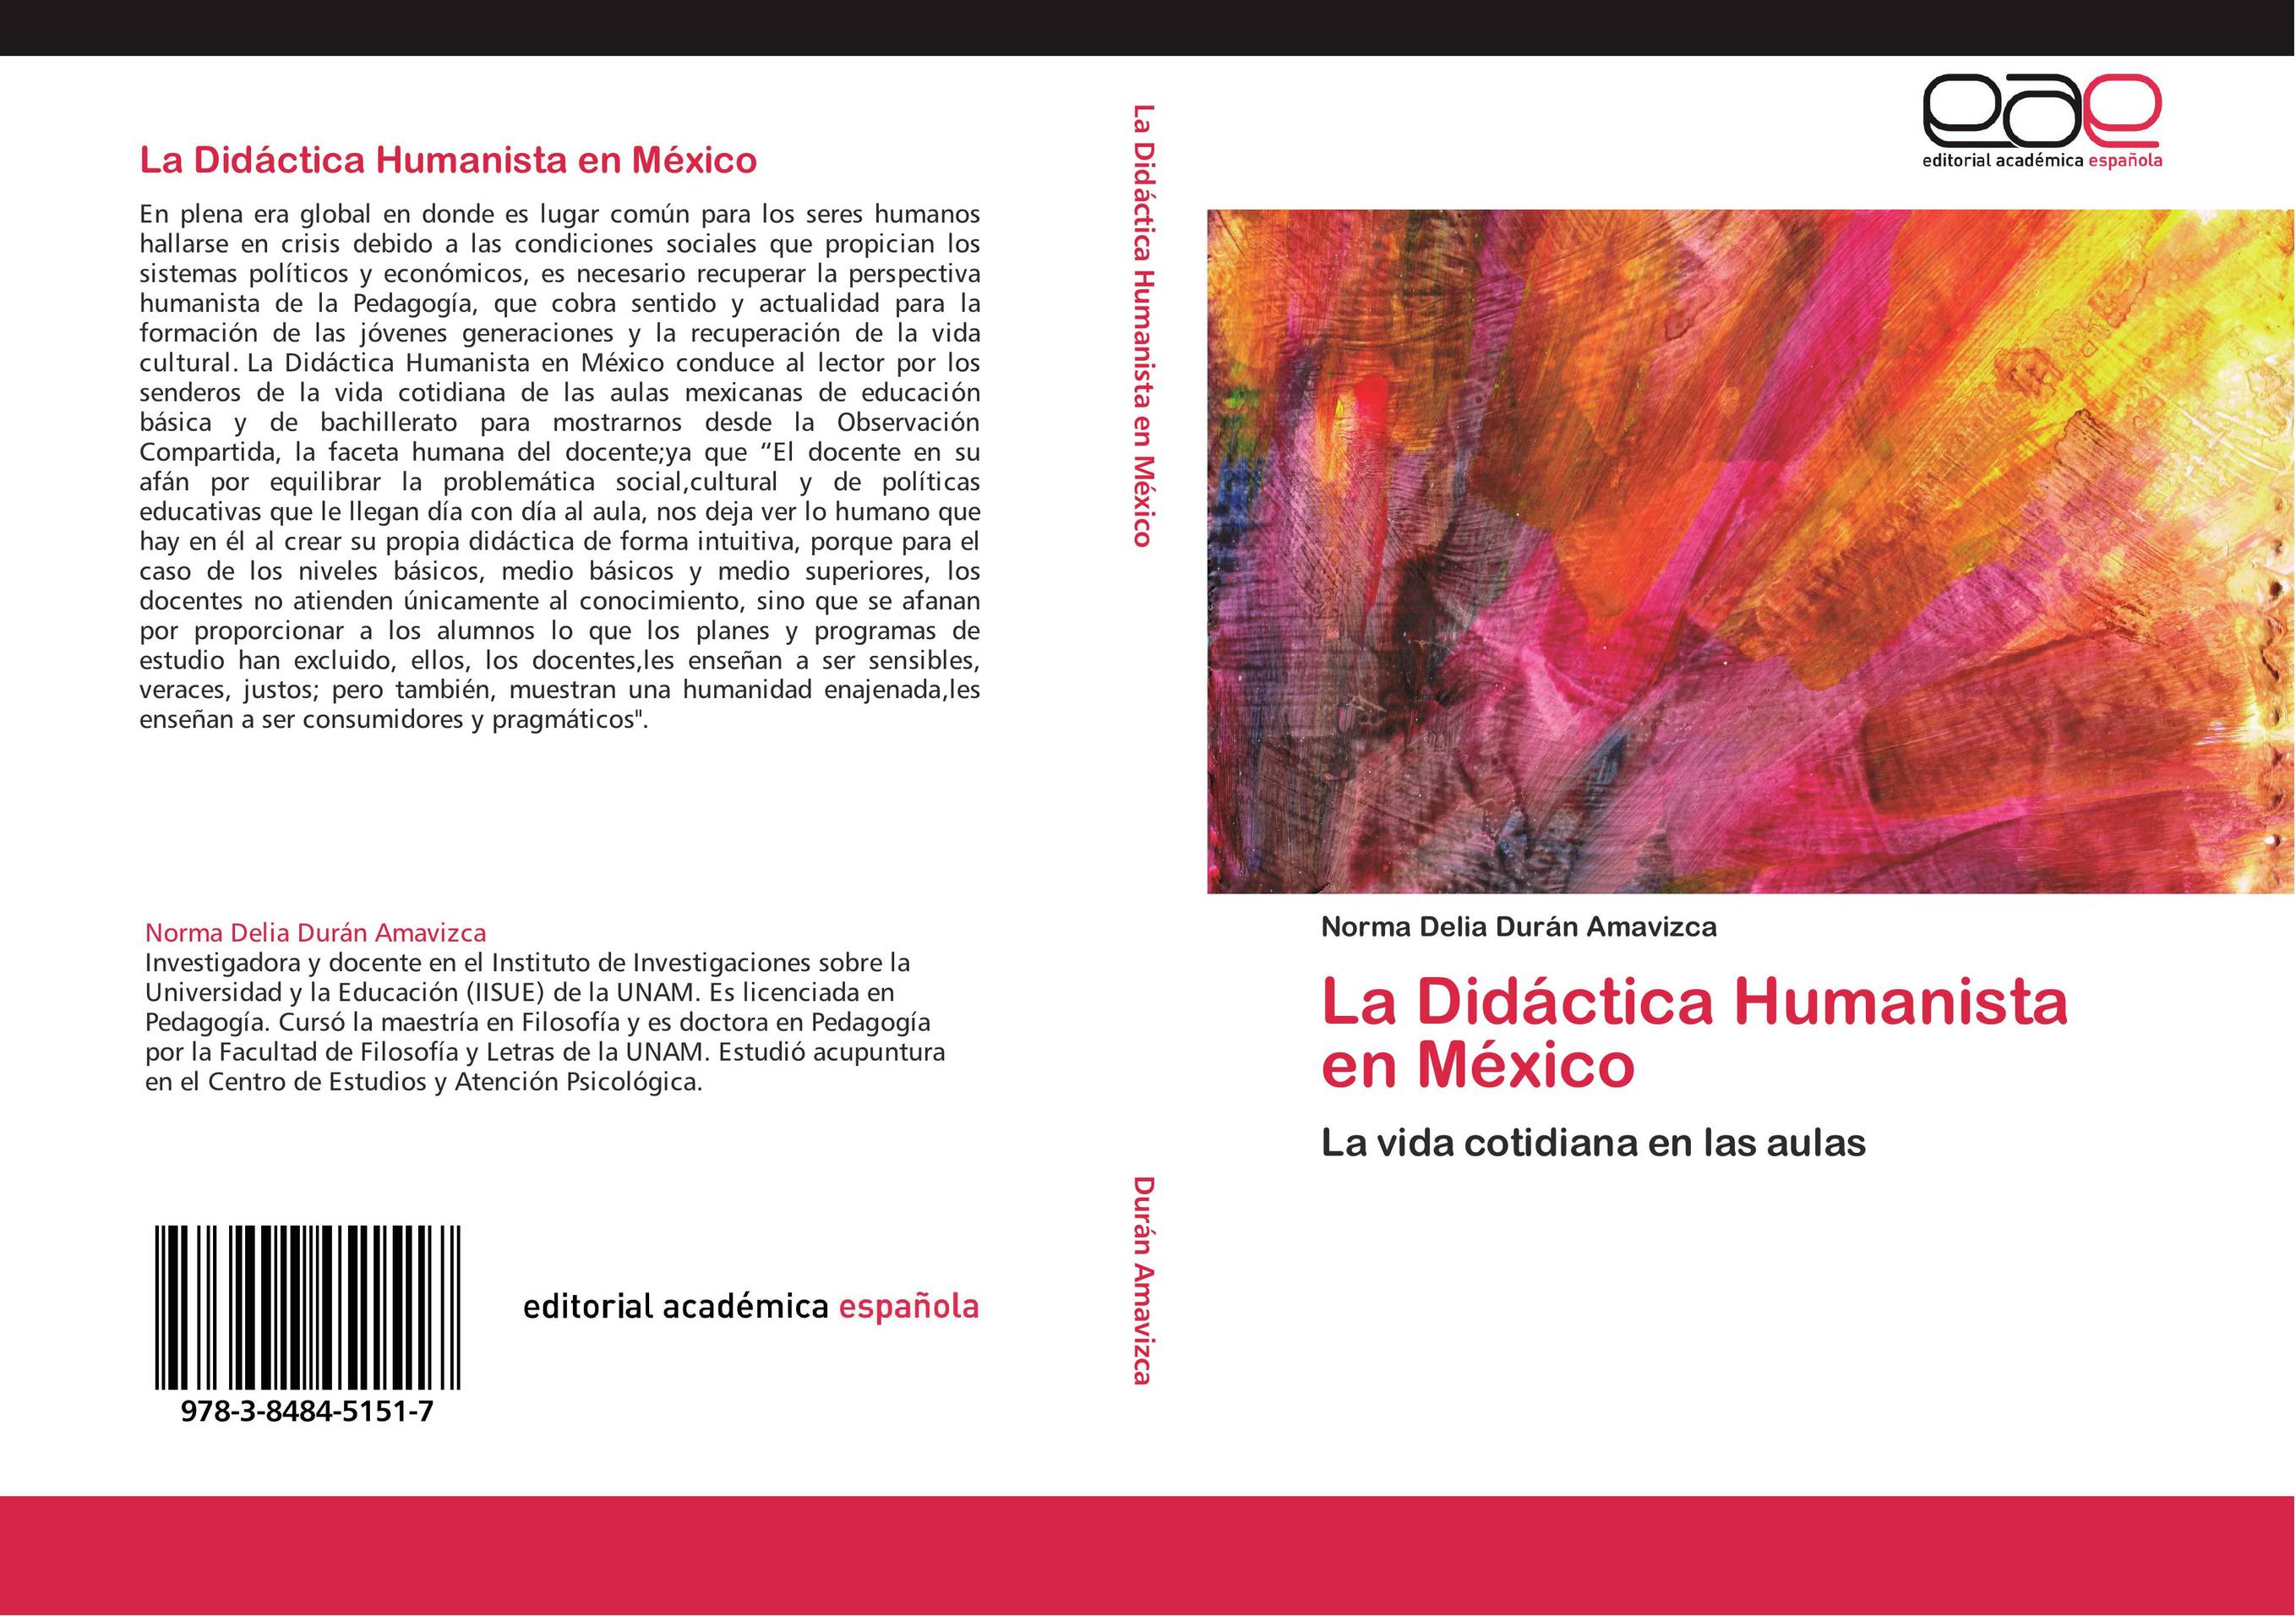 La Didáctica Humanista en México